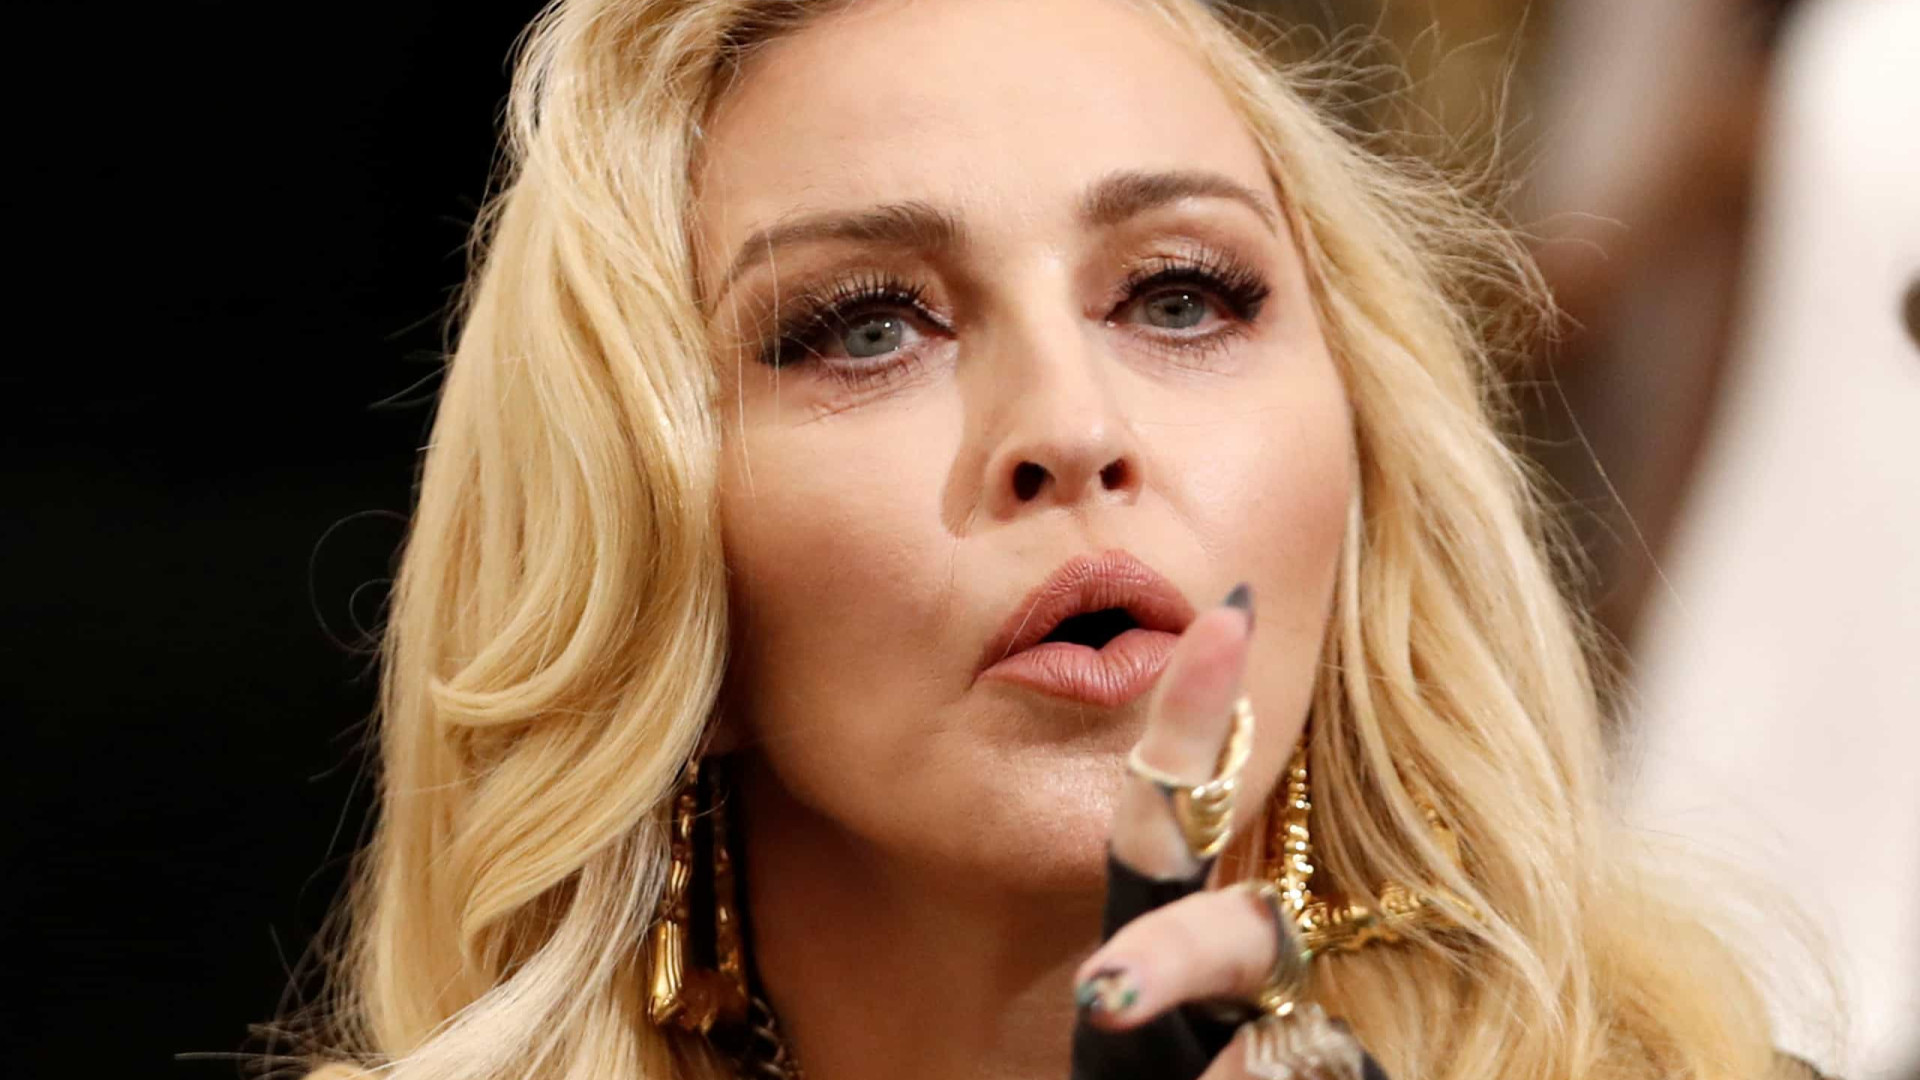 Madonna chama atenção por aparência jovial em cliques no Instagram; veja